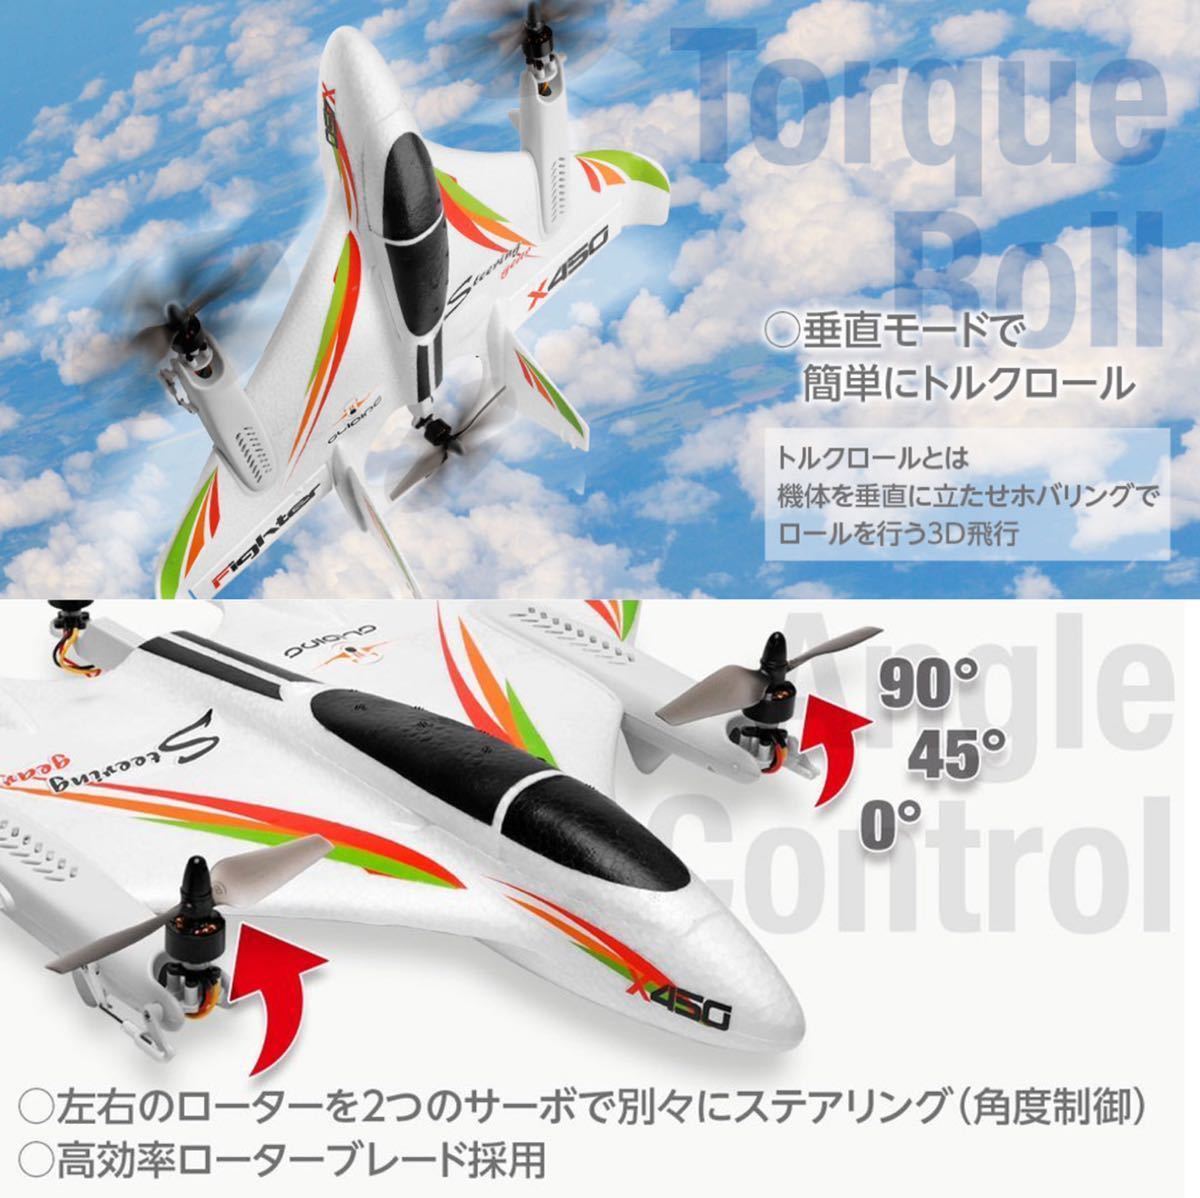 ★バッテリー2本 XK X450 3D/6G ラジコン プレーン rc飛行機 VTOL ブラシレスモーター 固定翼垂直 ドローン 2.4G 6CH モード1仕様 日本語_画像5